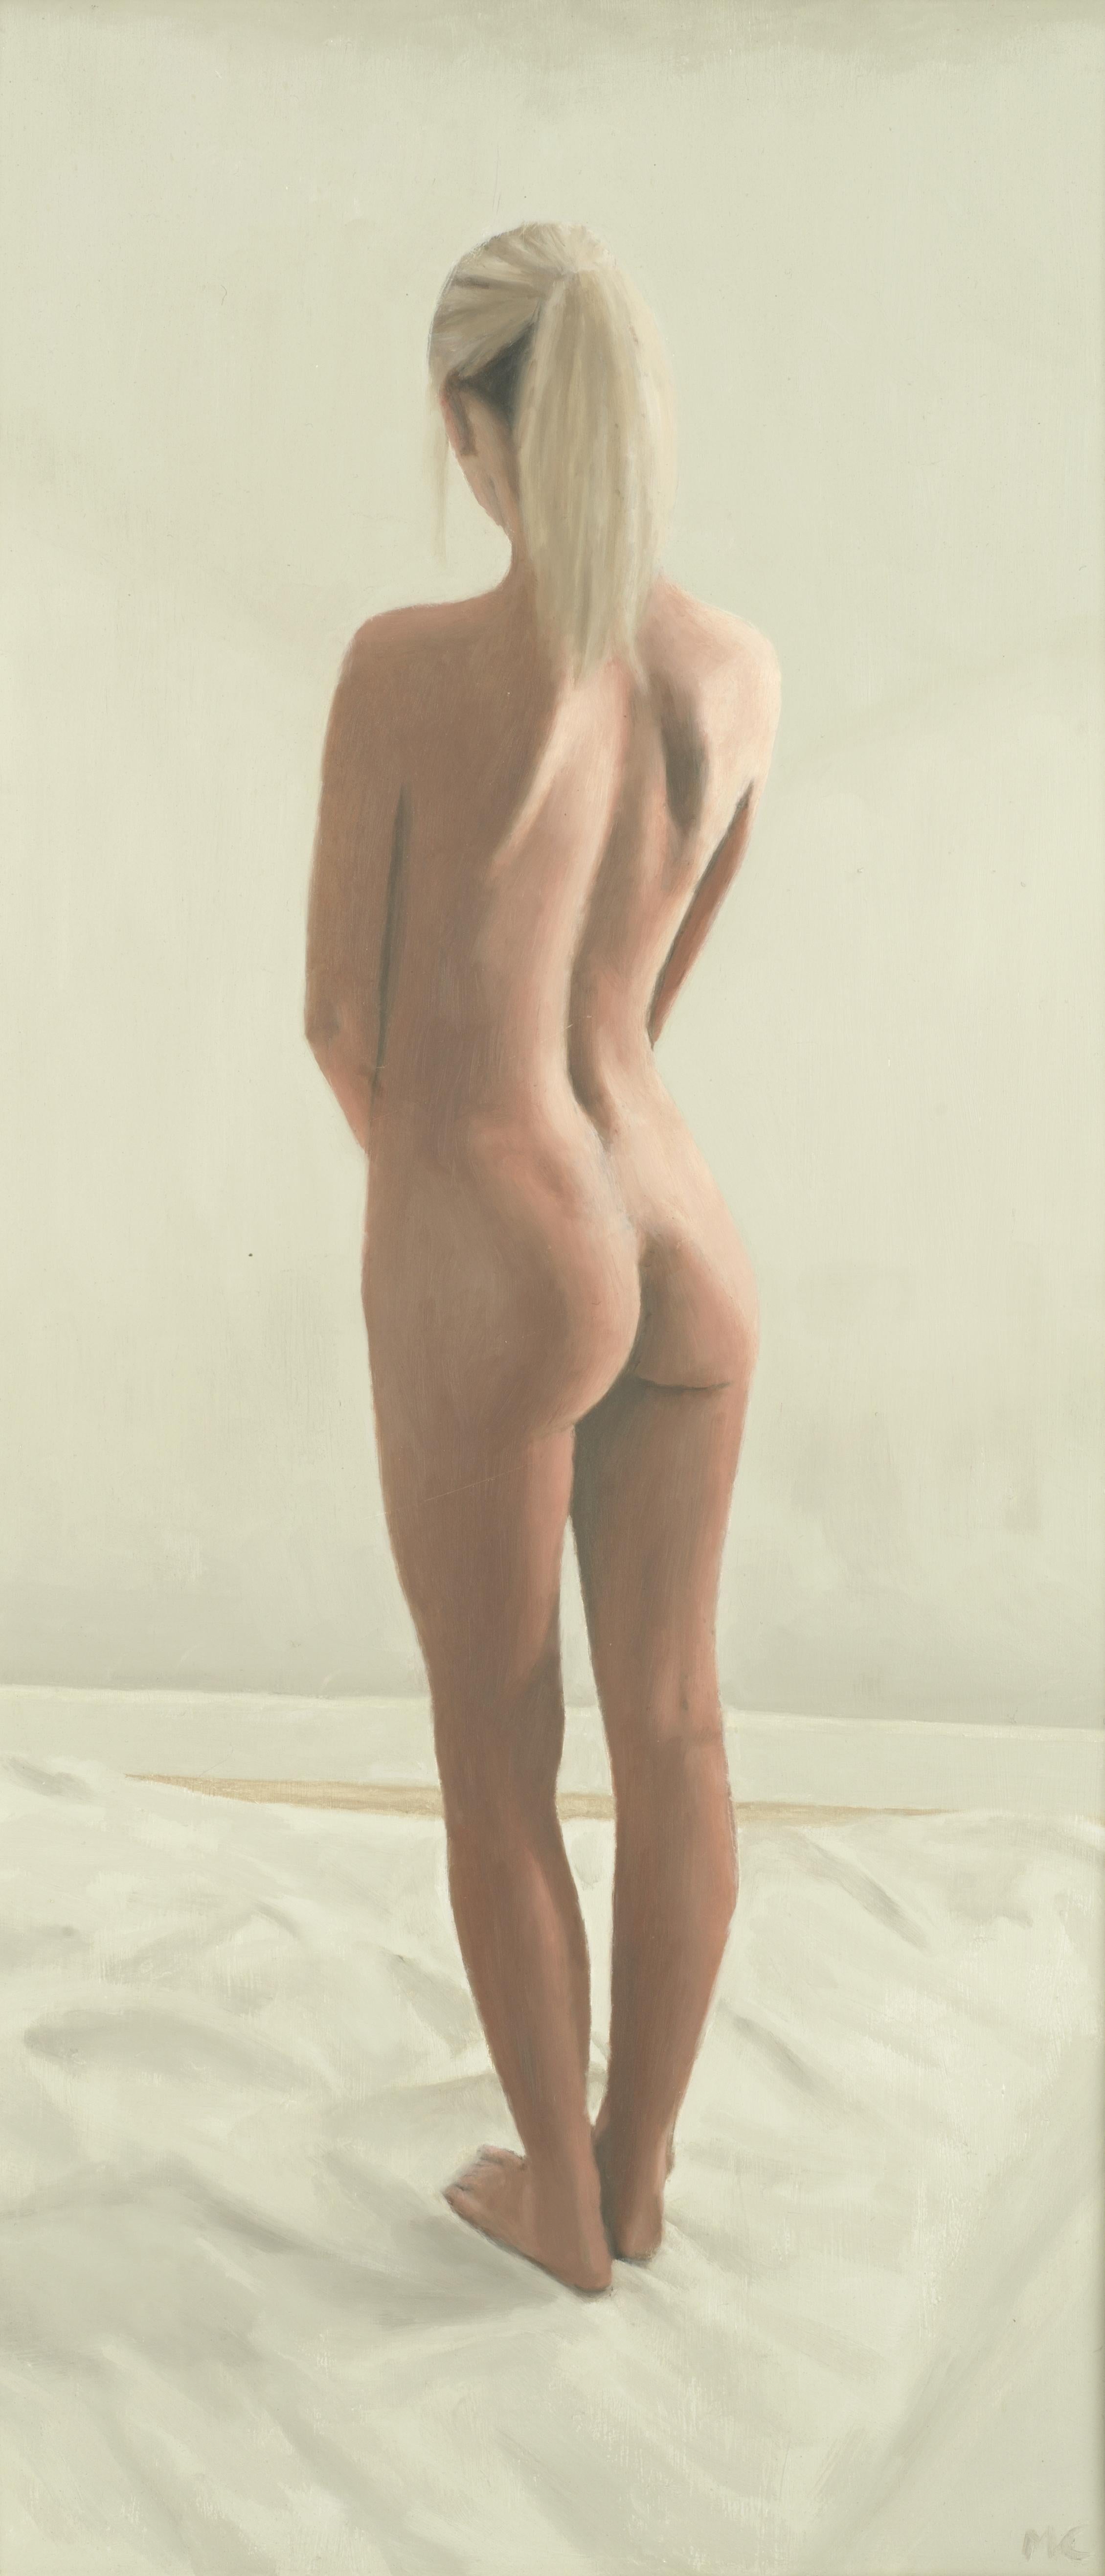 Ölgemälde eines stehenden weiblichen Aktes des britischen zeitgenössischen Künstlers Mark Clark

Kunst misst 8 x 17 Zoll
Rahmen misst 14 x 23 Zoll (ca.)

Mark Clark ist ein britischer Künstler, geboren 1959. Clark ist ein Absolvent des Loughborough